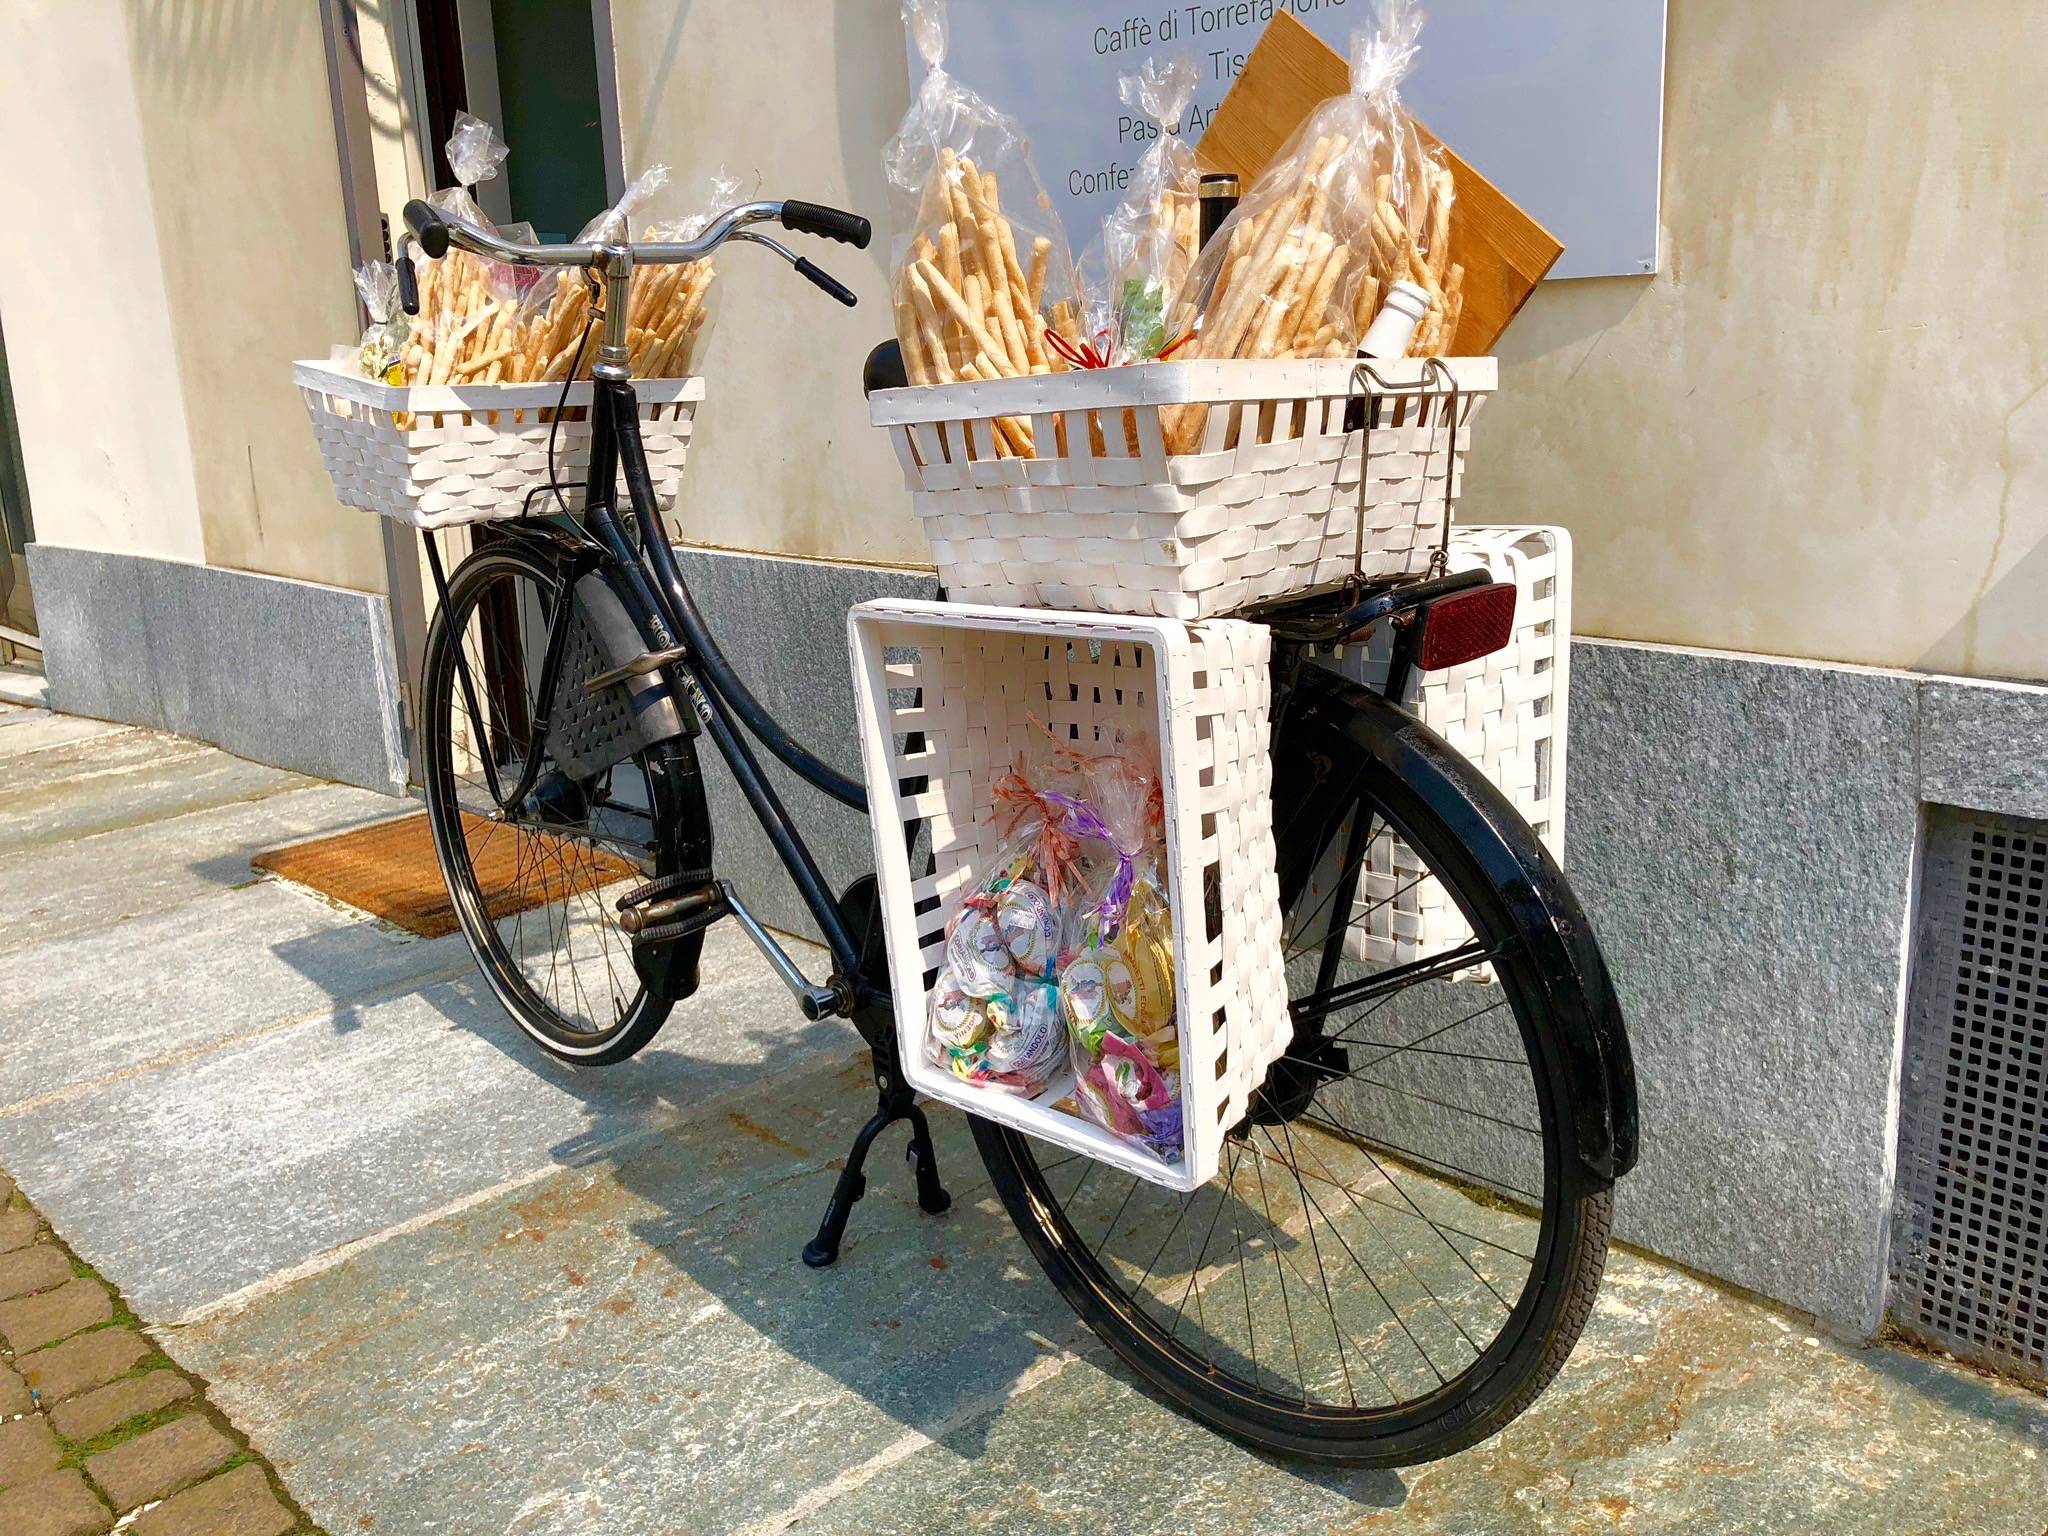 Rower z tradycyjnymi produktami z Turynu, kosze z grissini